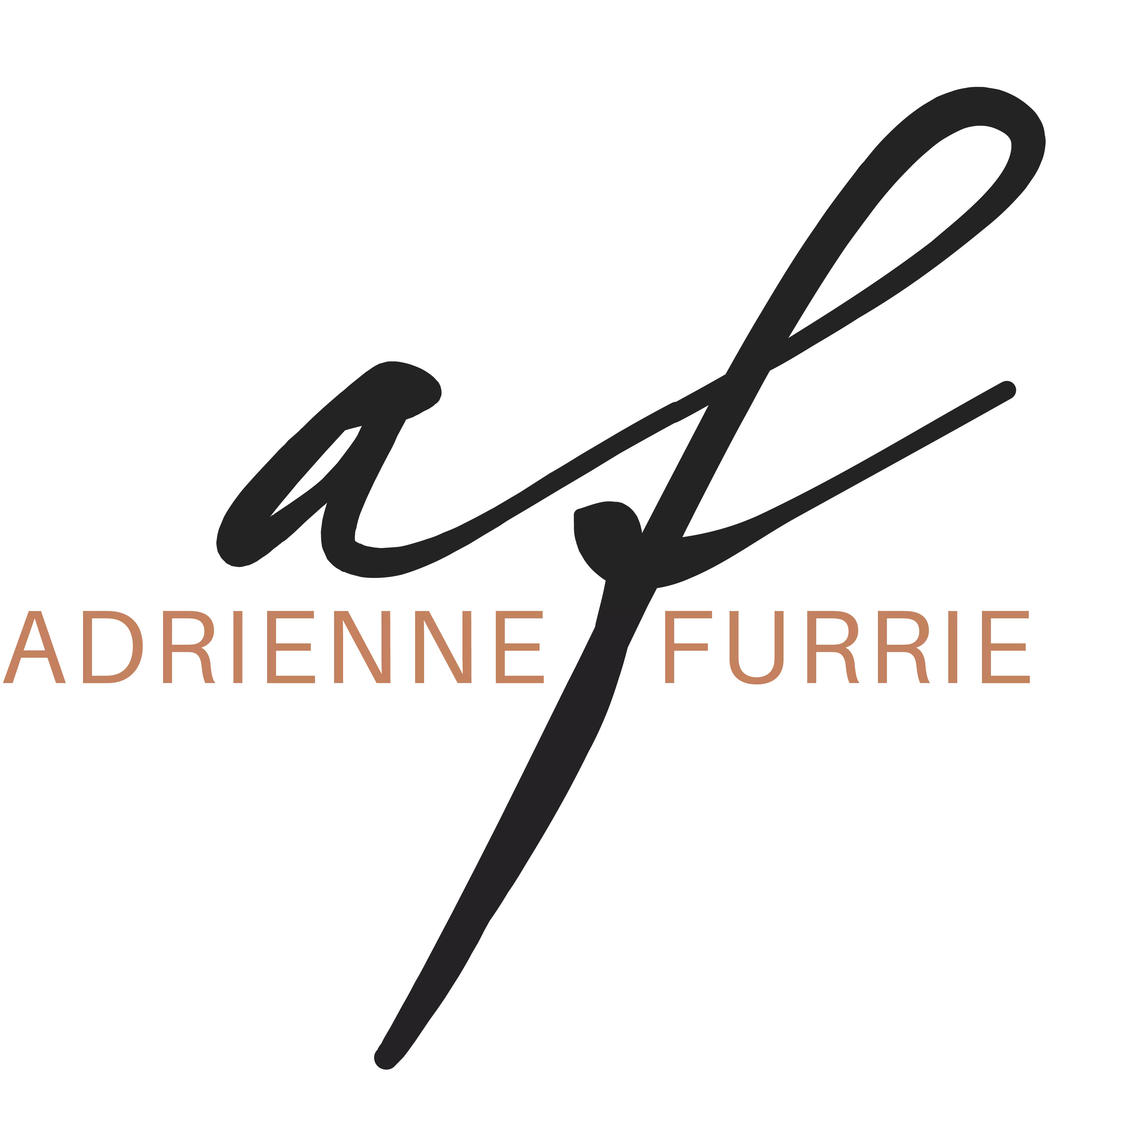 Adrienne Furrie Makeup